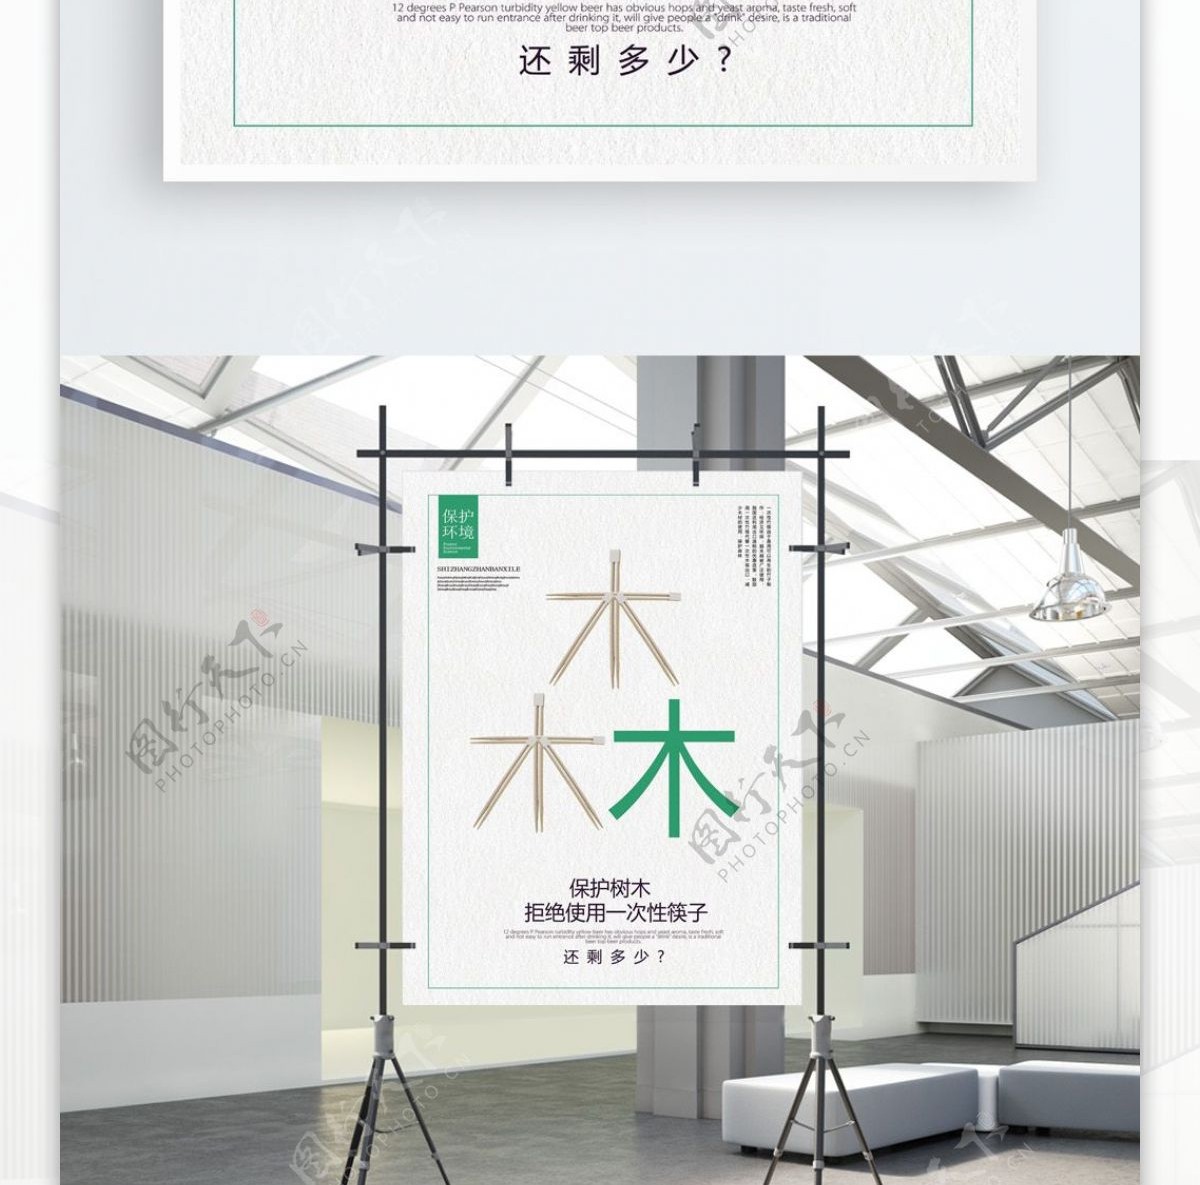 保护树木拒绝使用一次性筷子公益海报